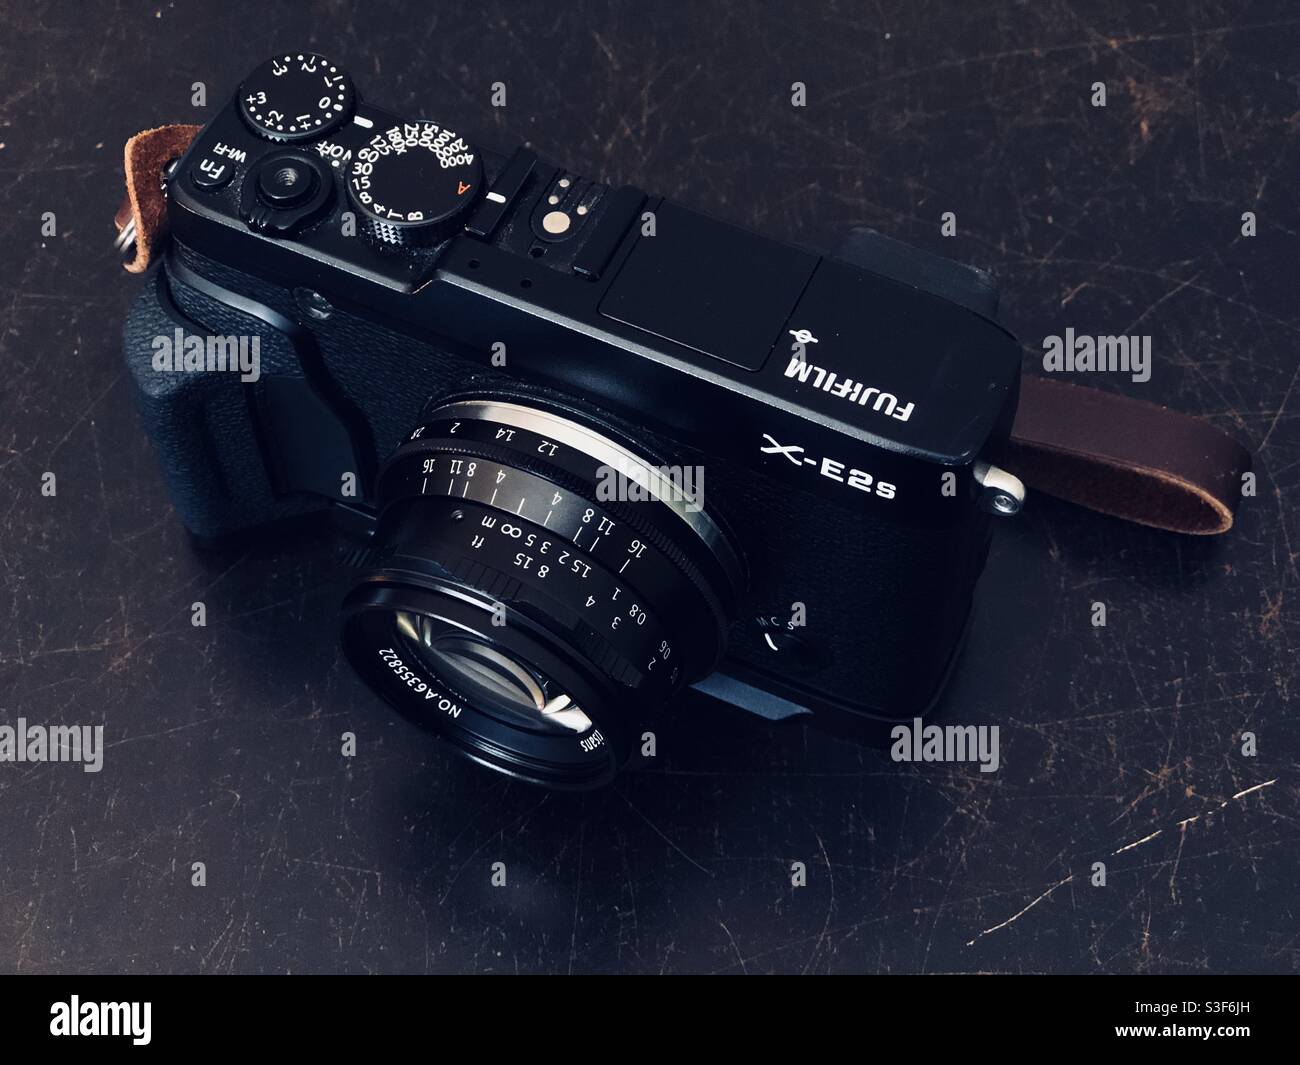 Appareil photo numérique Fujifilm X-E2S de type télémètre avec une vitesse de 35 mm lentille principale sur une table Banque D'Images